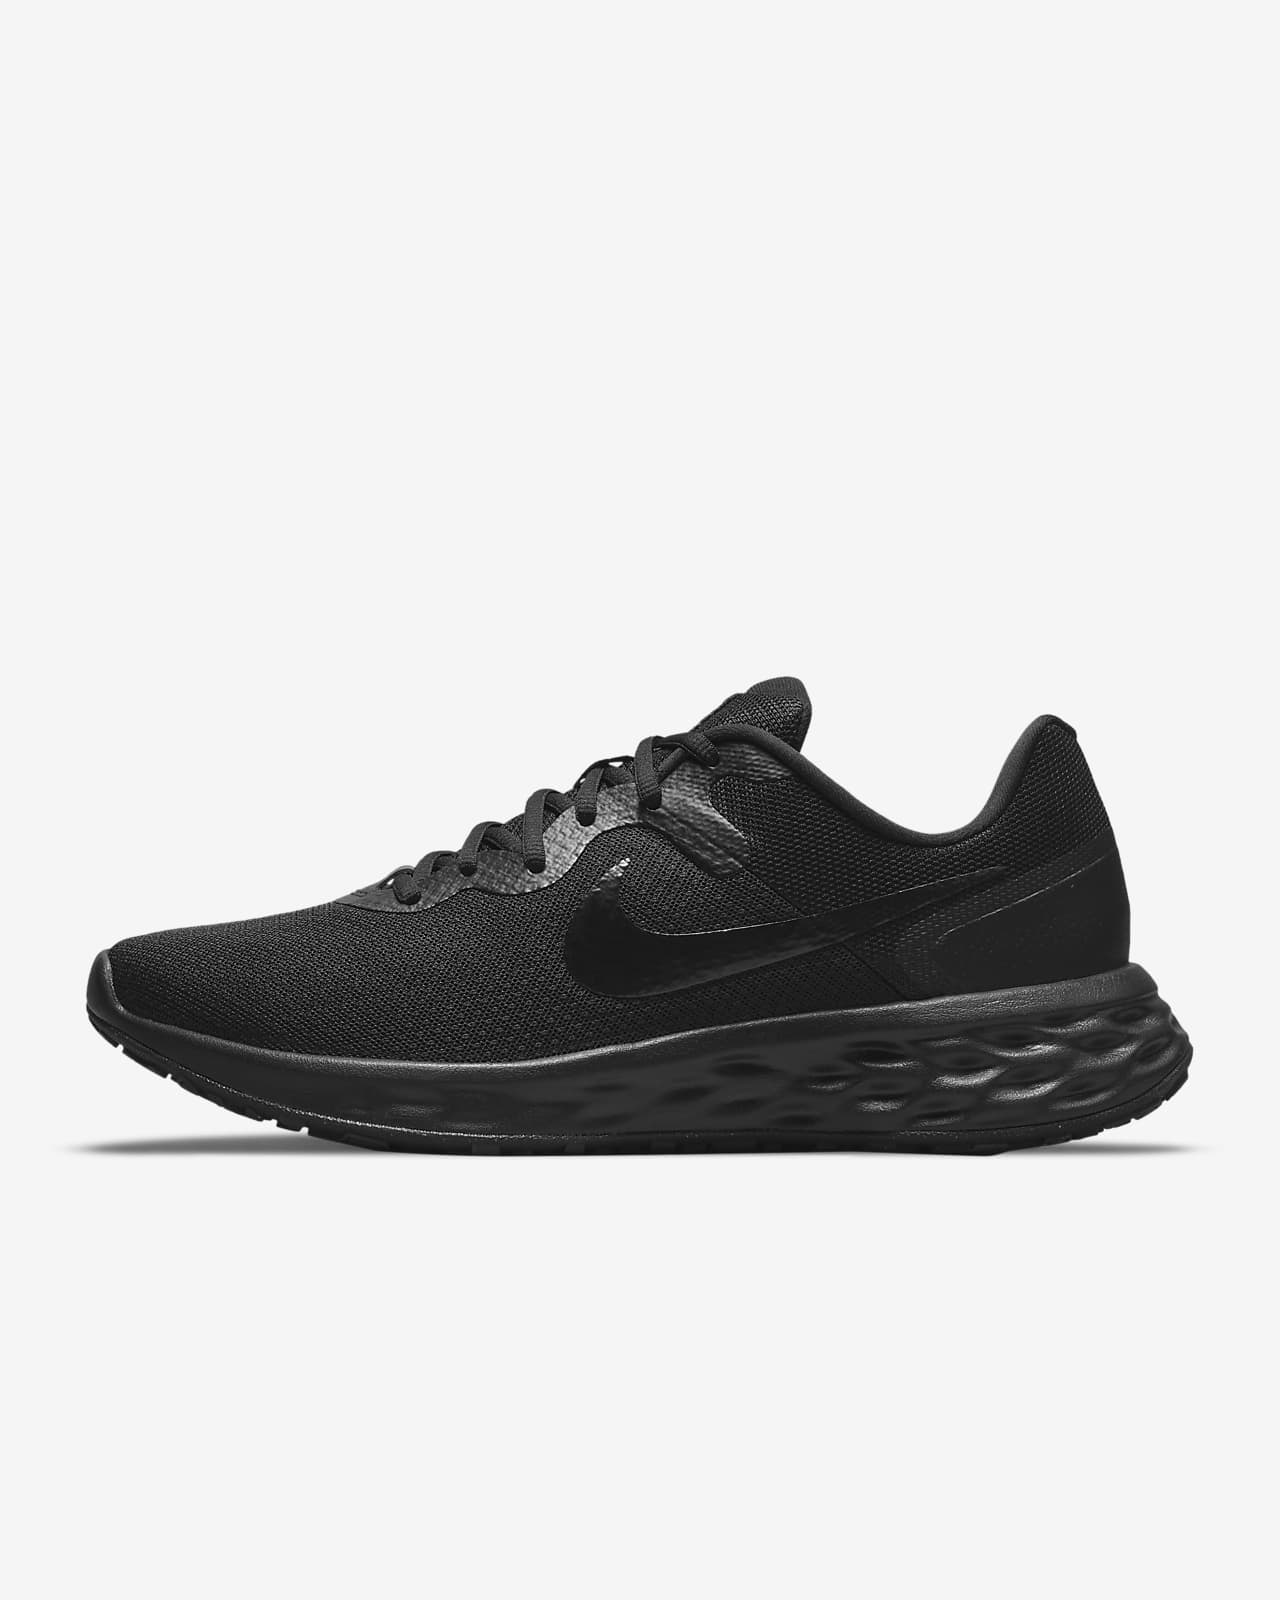 Ανδρικά παπούτσια για τρέξιμο σε δρόμο Nike Revolution 6